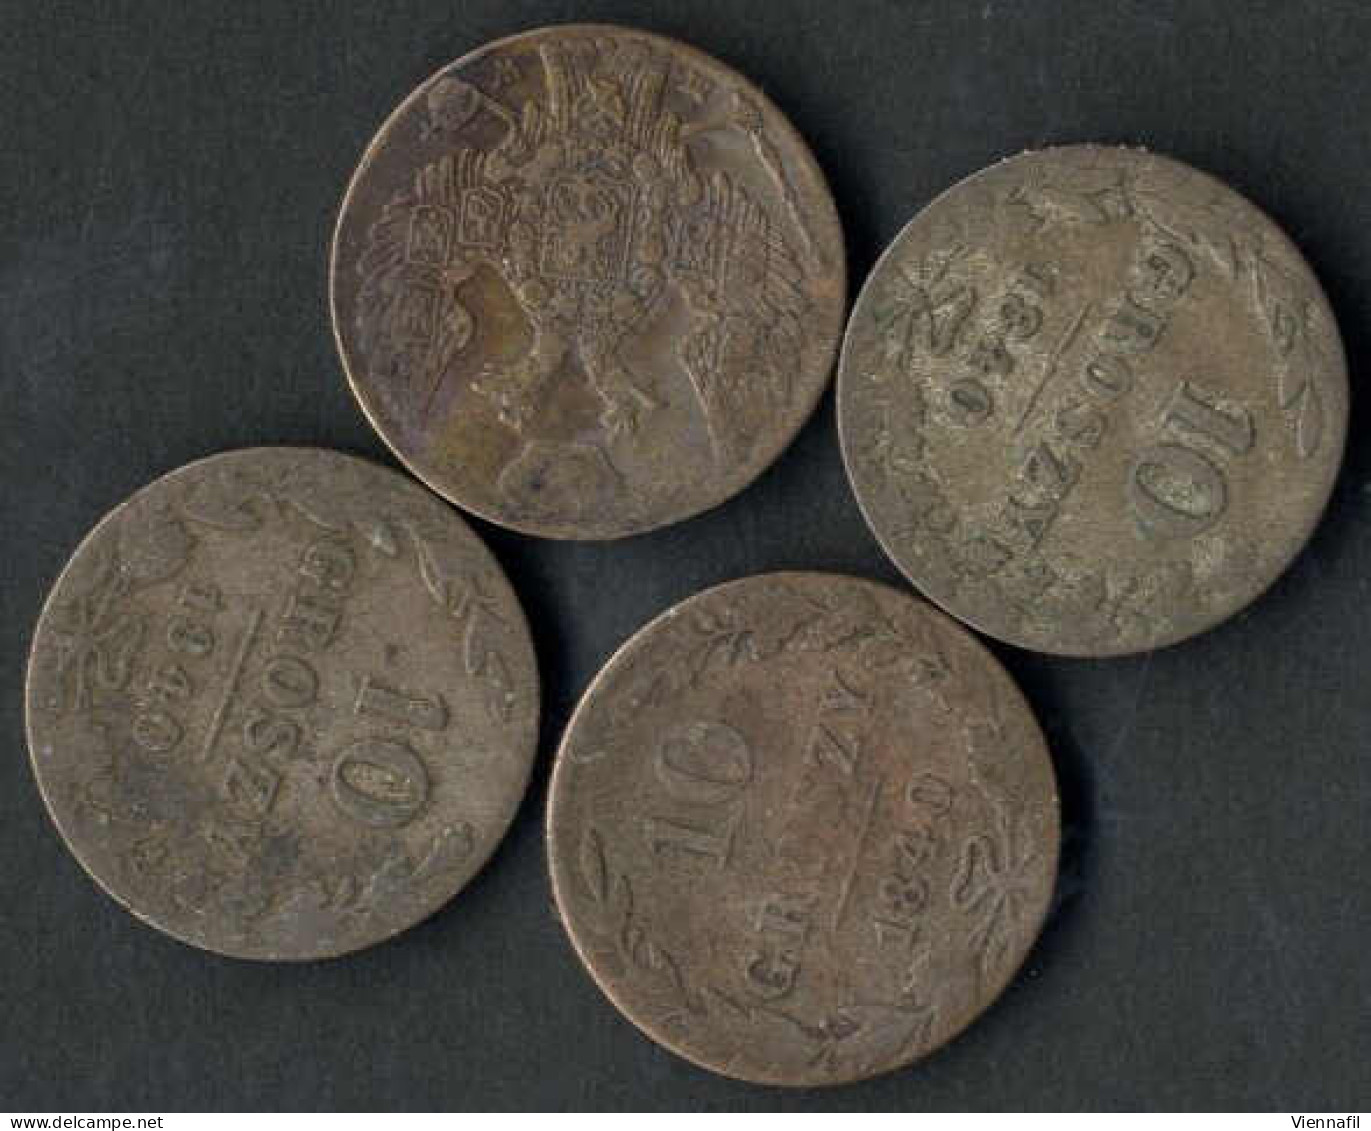 10 Groszy, 1840, Nikolaus I. 1825-55, Lot Mit Sieben Silbermünzen, Vier Mit Patina Schön, Drei Vorzüglich, C.113a - Pologne